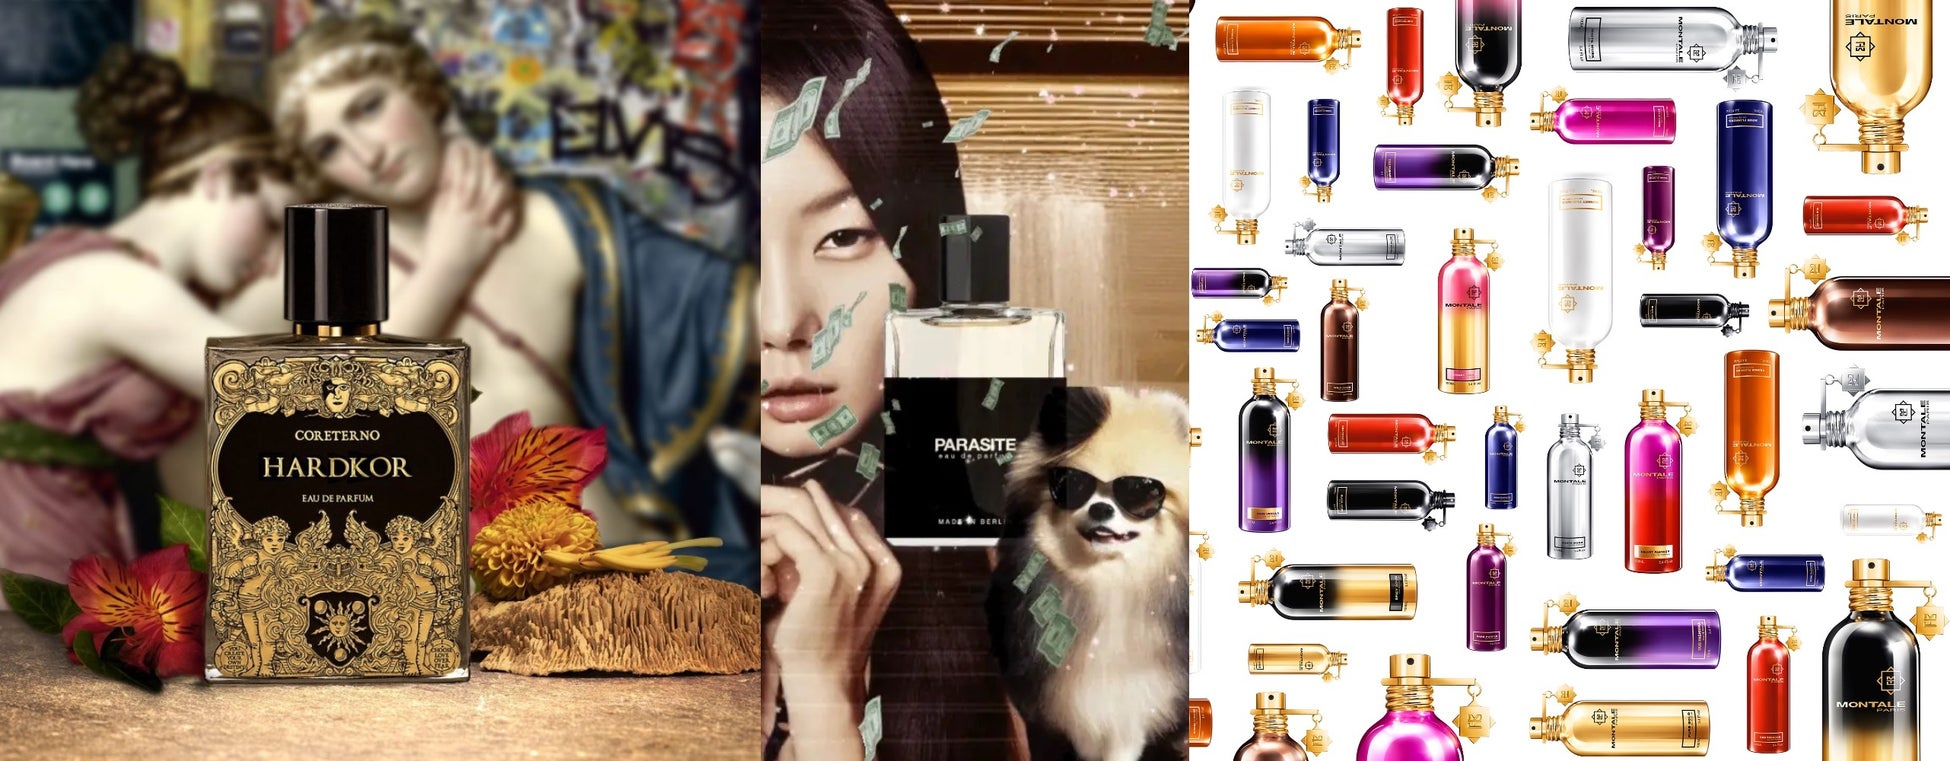 23ブランド約300種類の香りや特別企画が楽しめる「第一回 香展」が2023年12月1日(金)〜3日(日)に東京・表参道にて開催。主催は京都のフレグランス専門店LE SILLAGE(ル シヤージュ)。